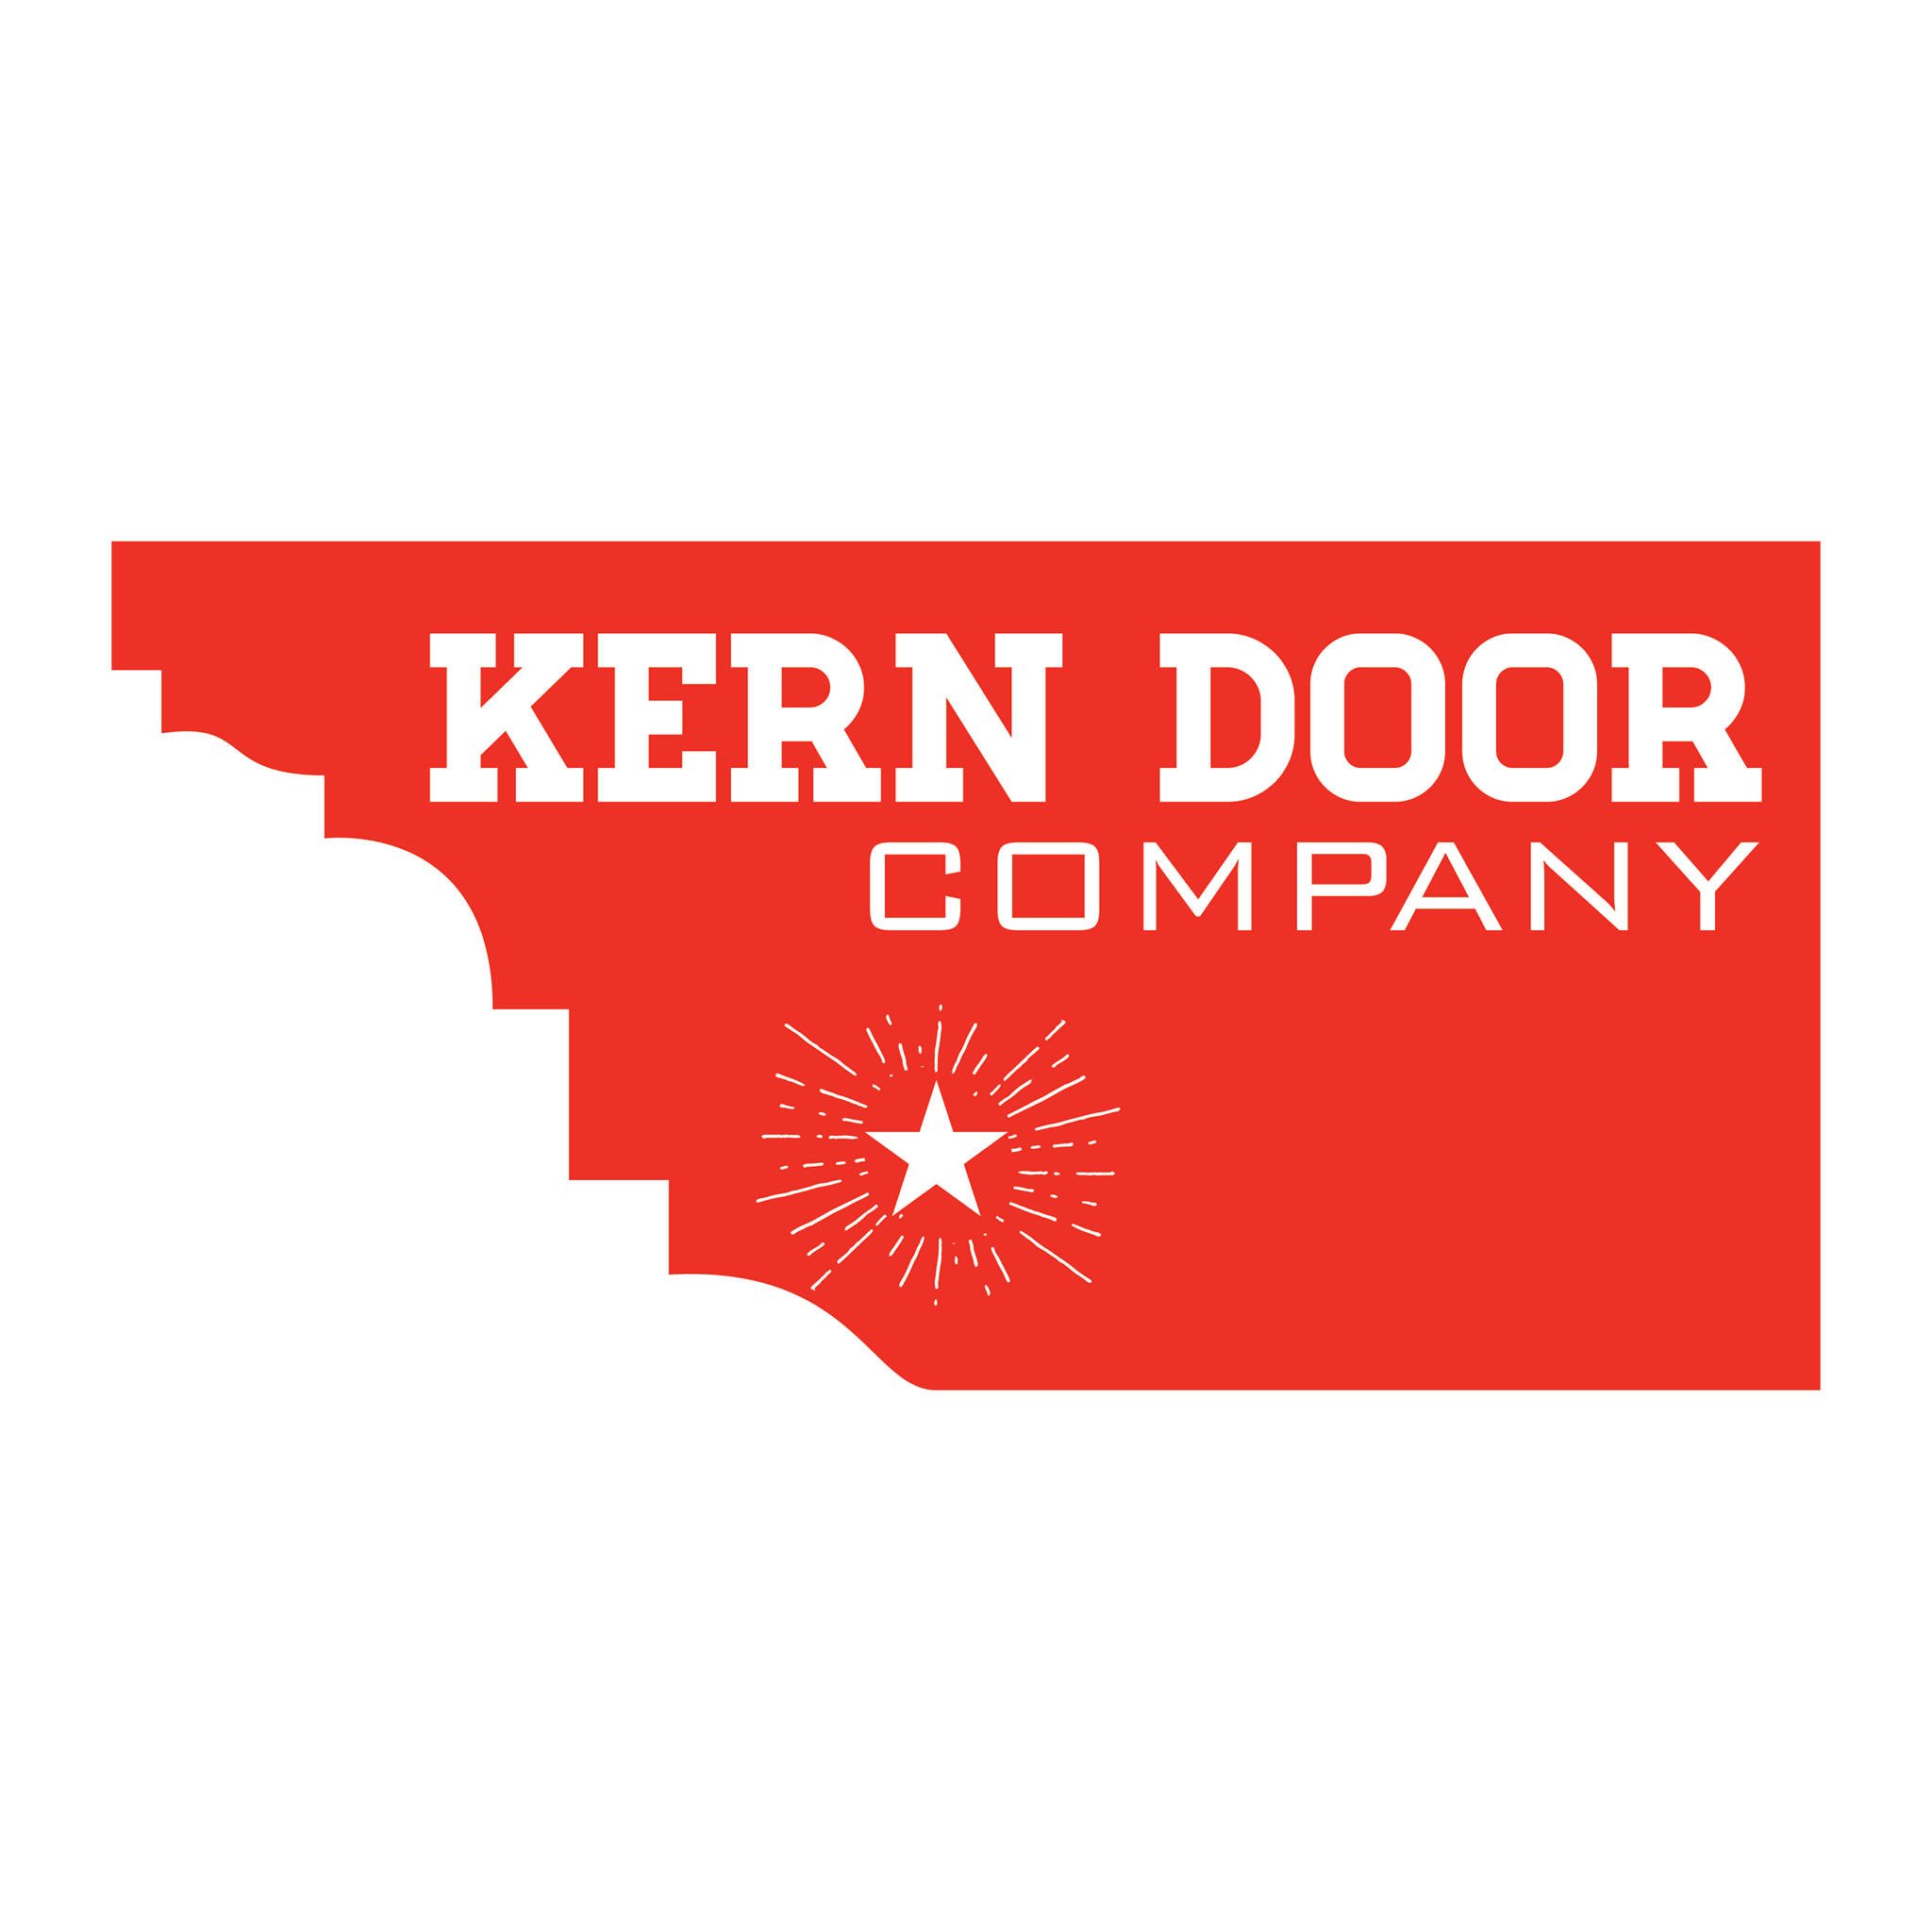 Company logo of Kern Door Company